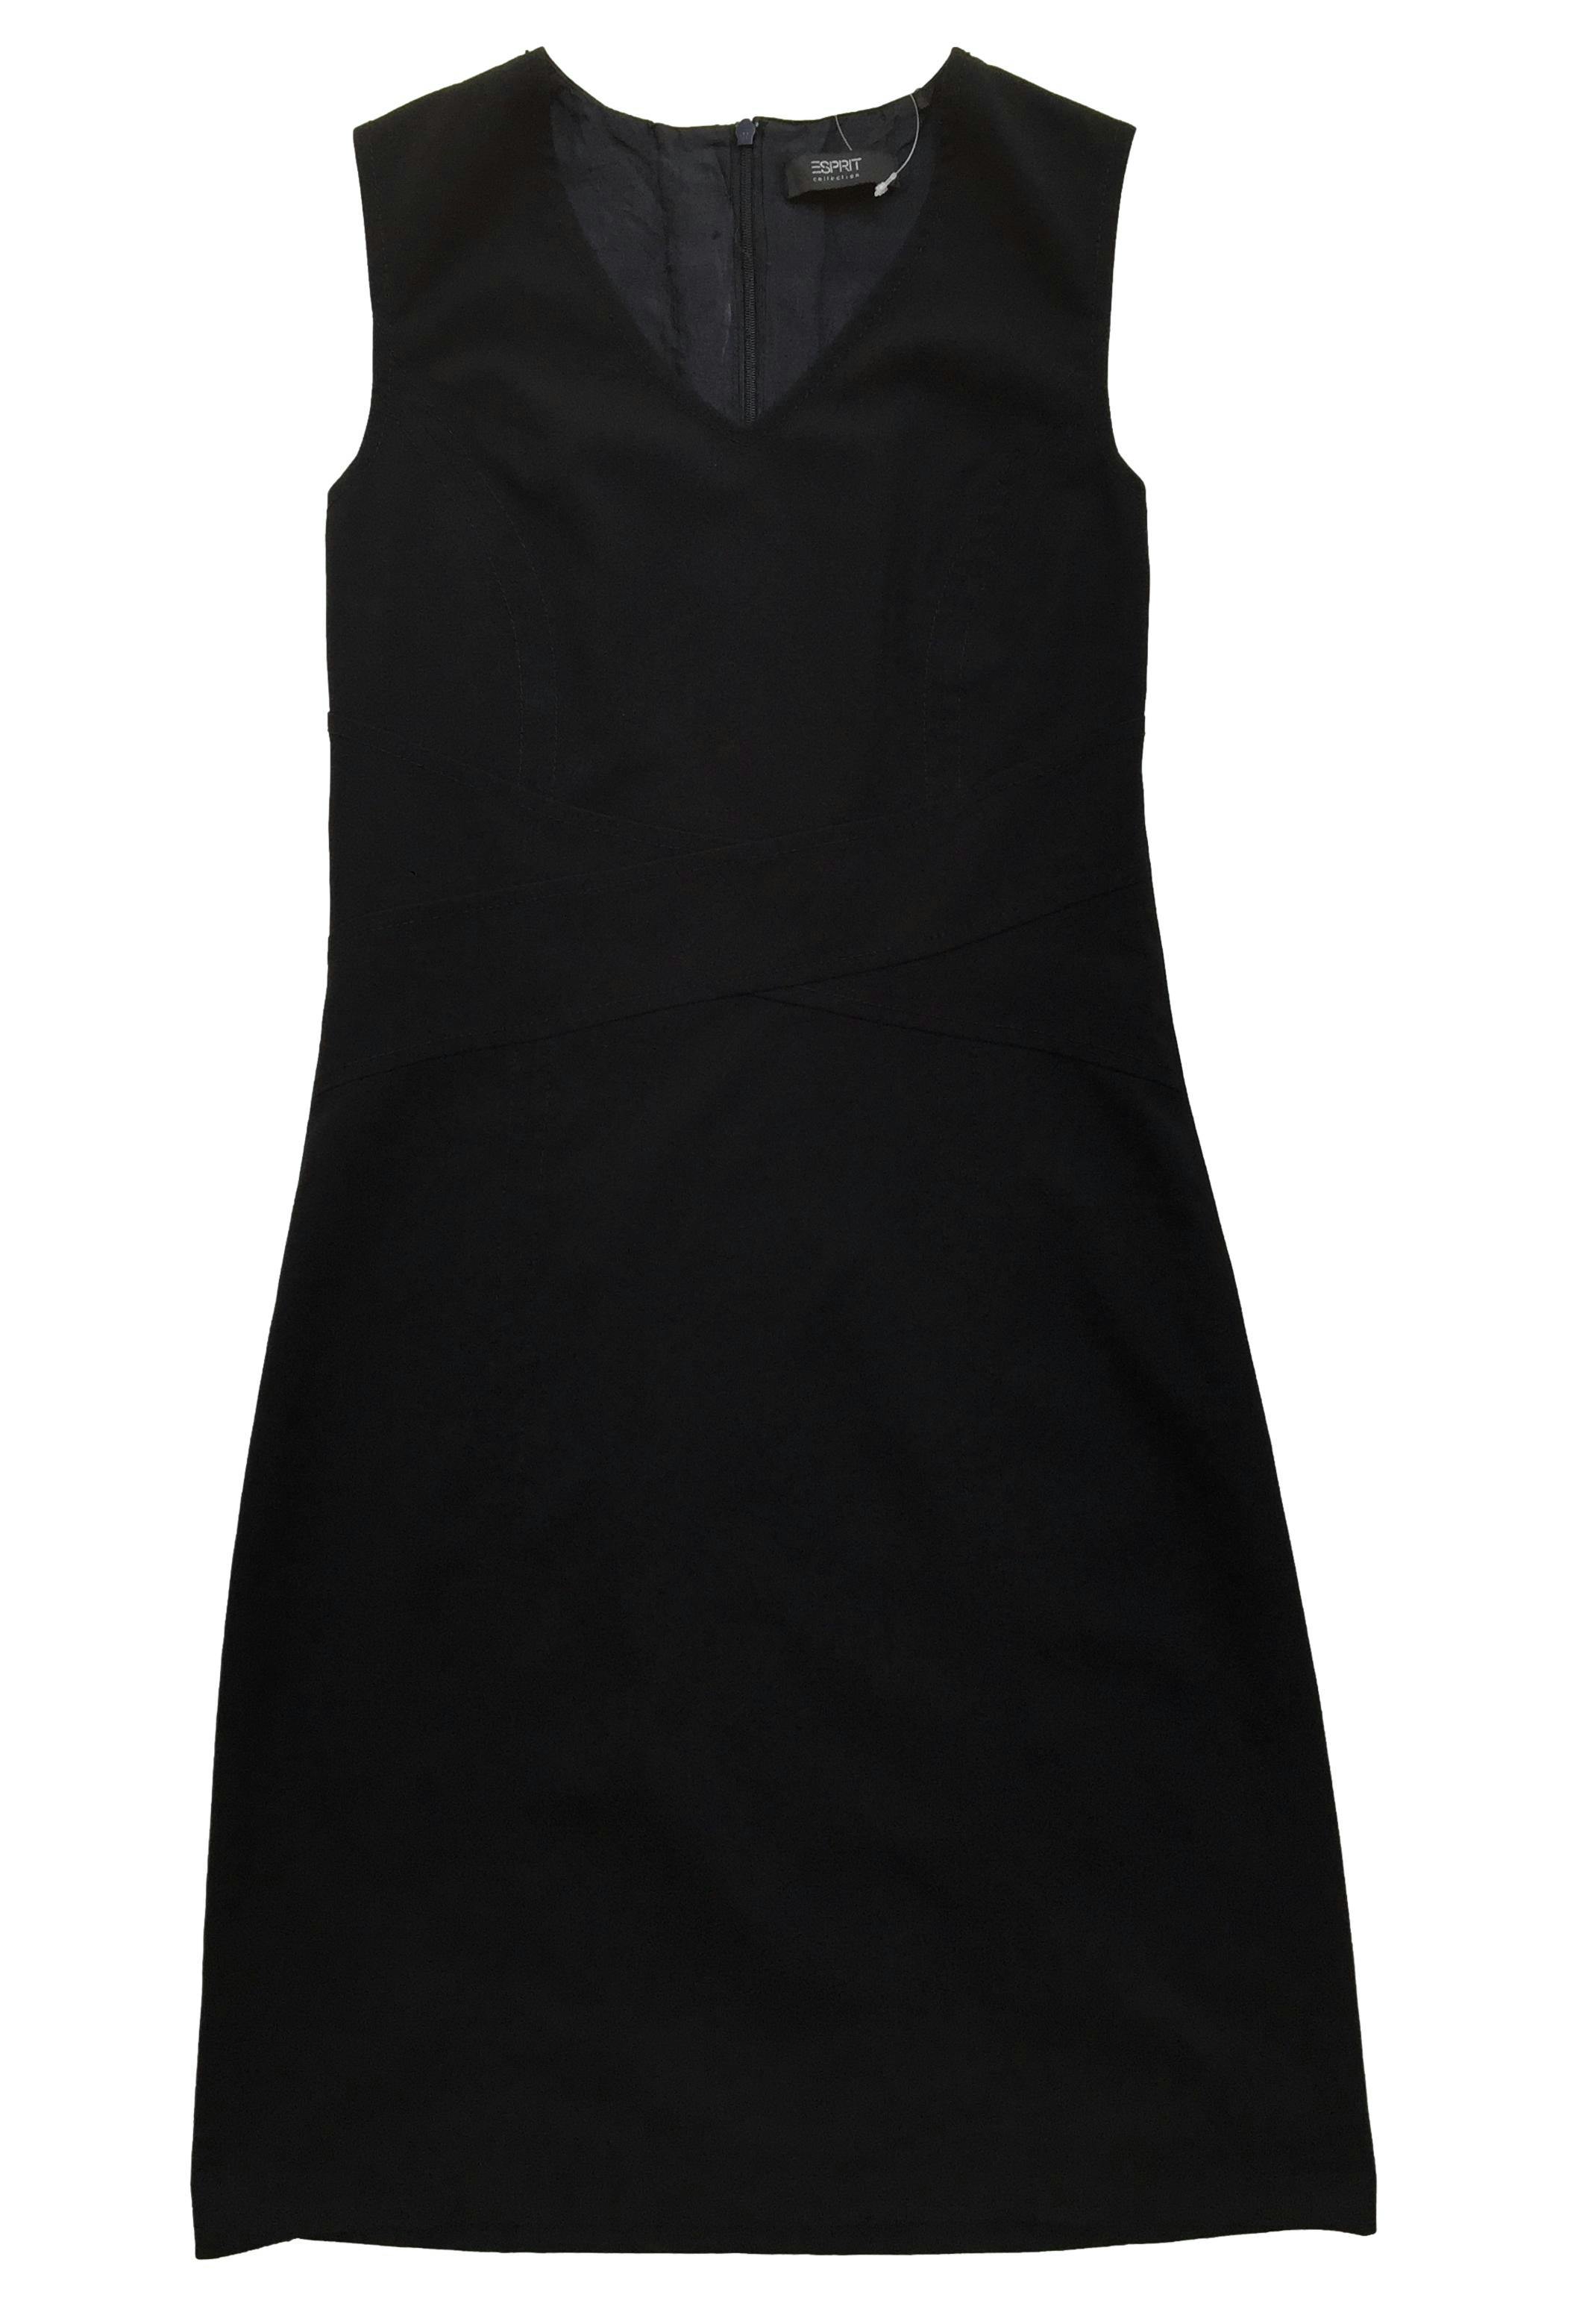 Vestido Espirit negro, corte en A, forro y cierre posterior invisible. Busto 84cm, Largo 90cm.